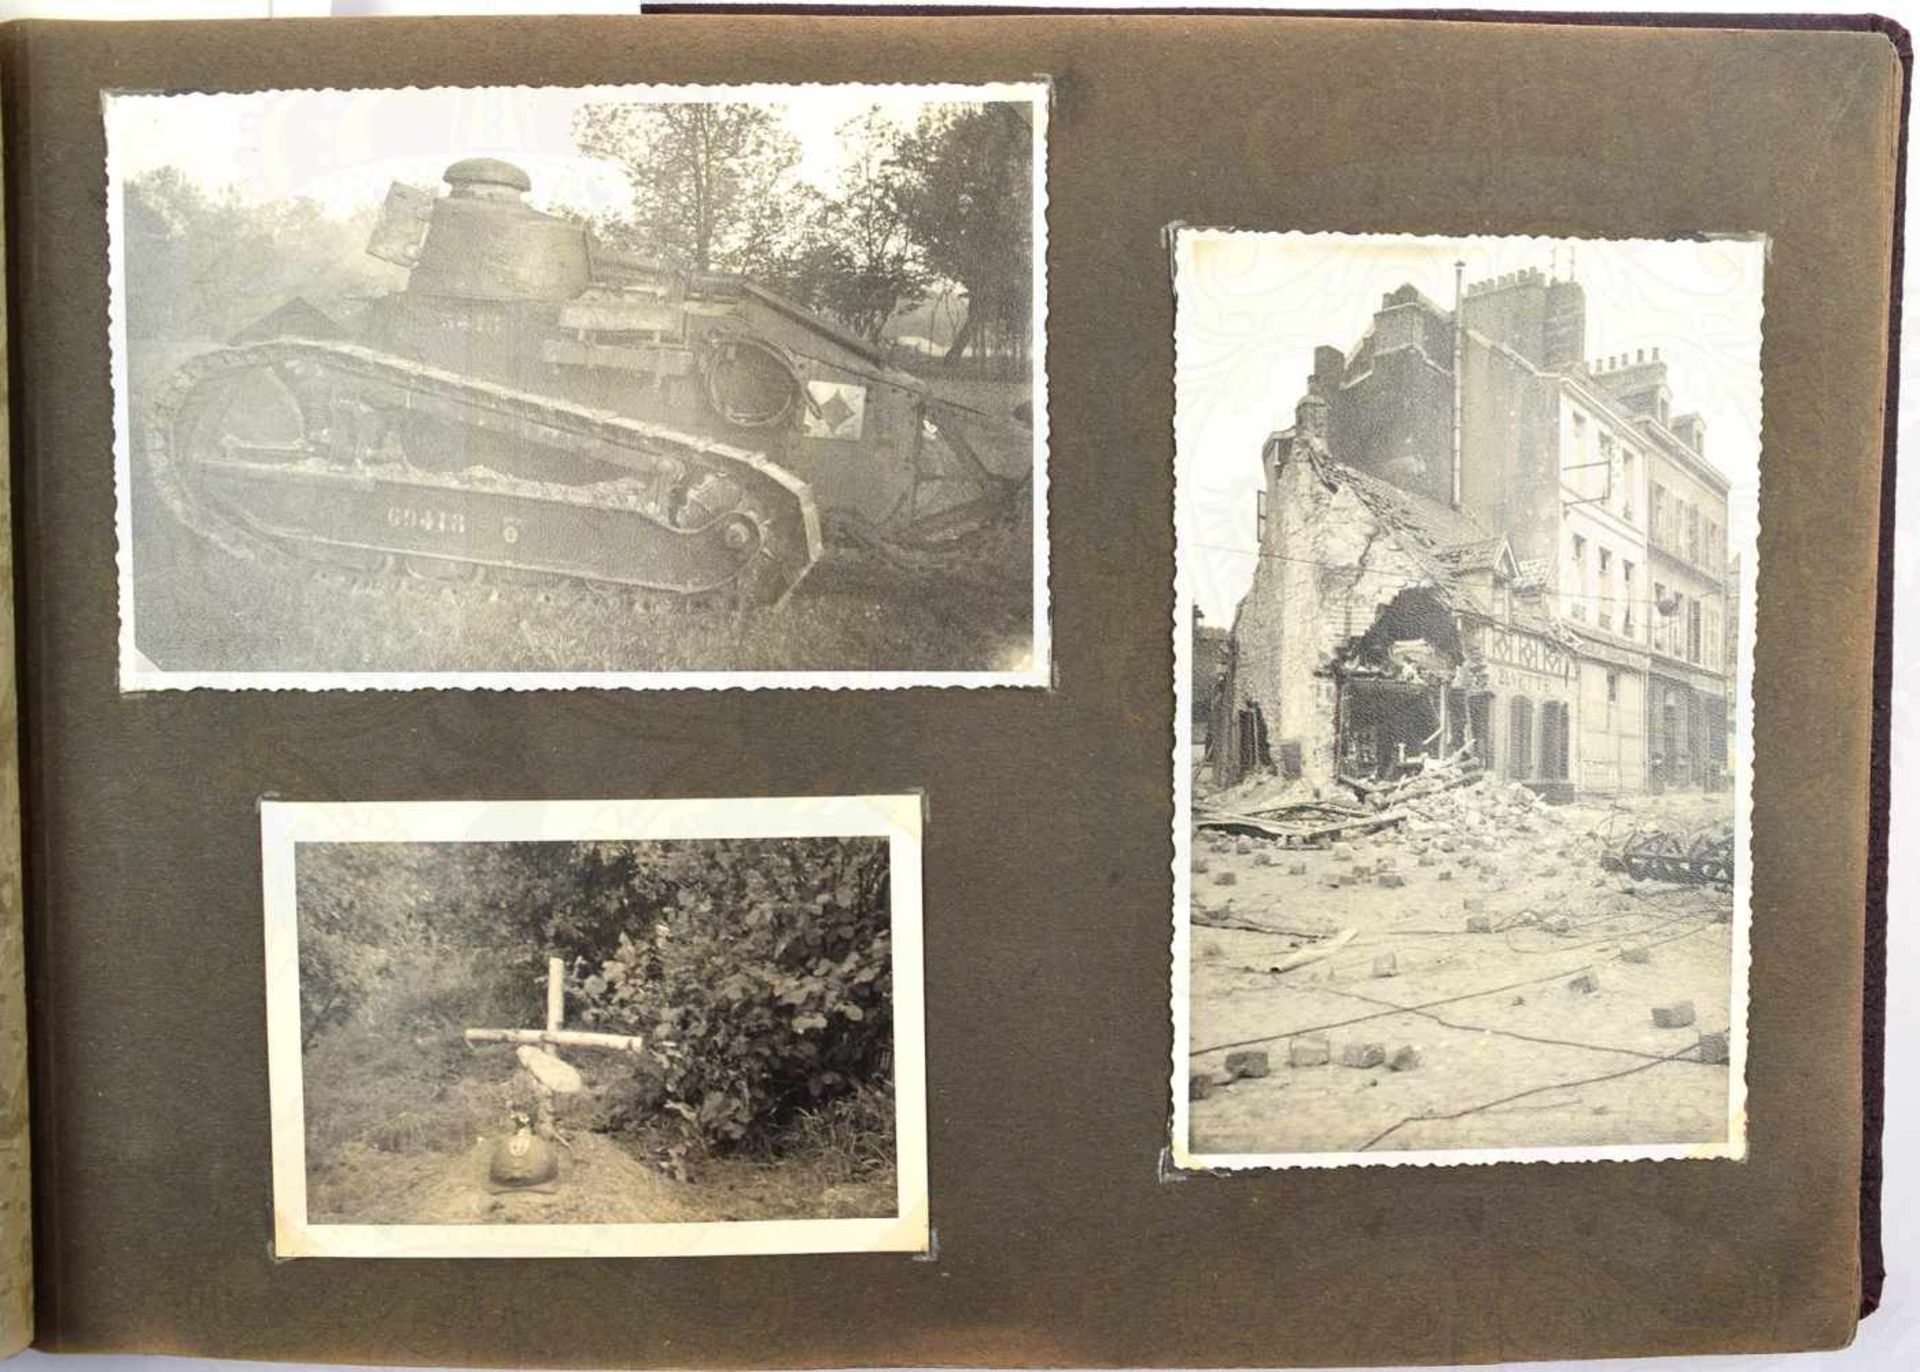 FOTOALBUM SCHÜTZEN-REGIMENT 2 mit 145 Fotos u. 5 AK, 1939-1940, Frankreich-Feldzug, Vormarsch, - Bild 2 aus 4